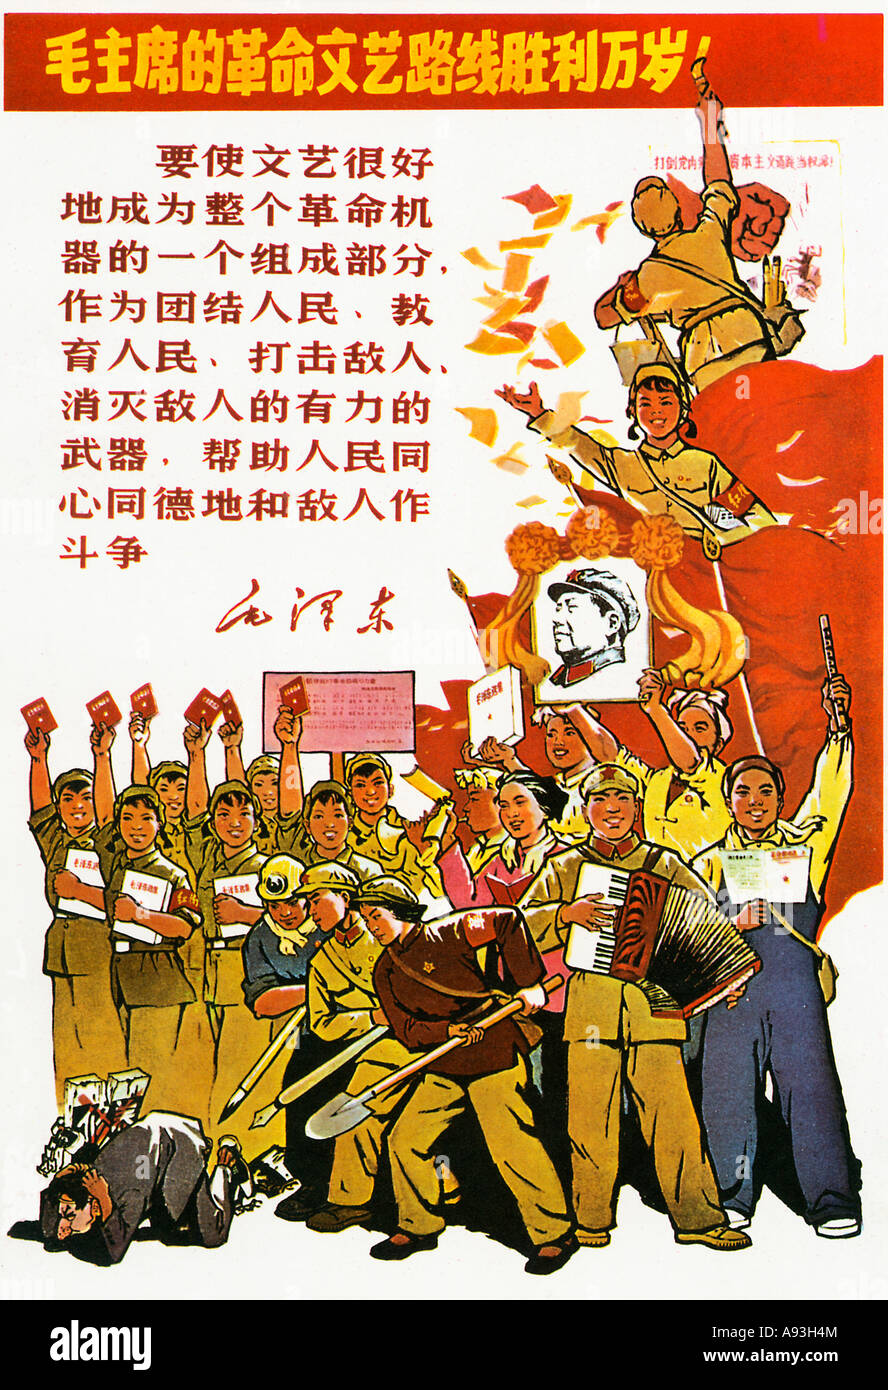 La grandine la sconfitta del revisionismo nel nostro Cina 1967 poster del periodo della rivoluzione culturale cinese Foto Stock